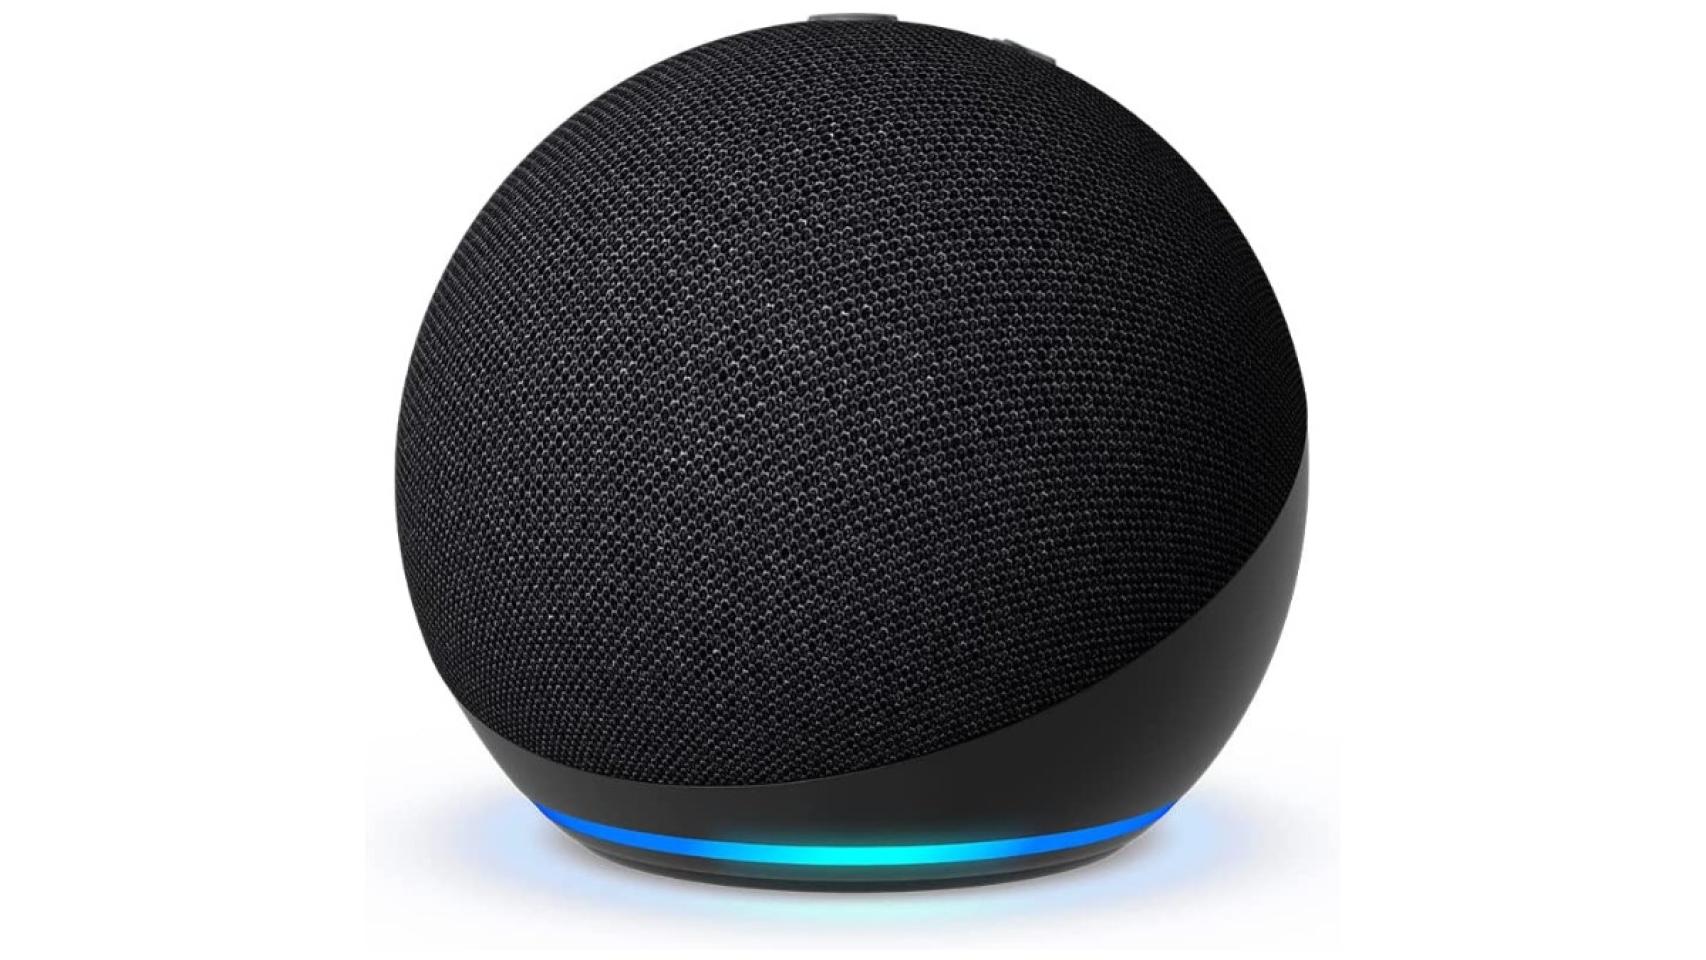 Consigue el altavoz inteligente Echo Dot de última generación con Alexa